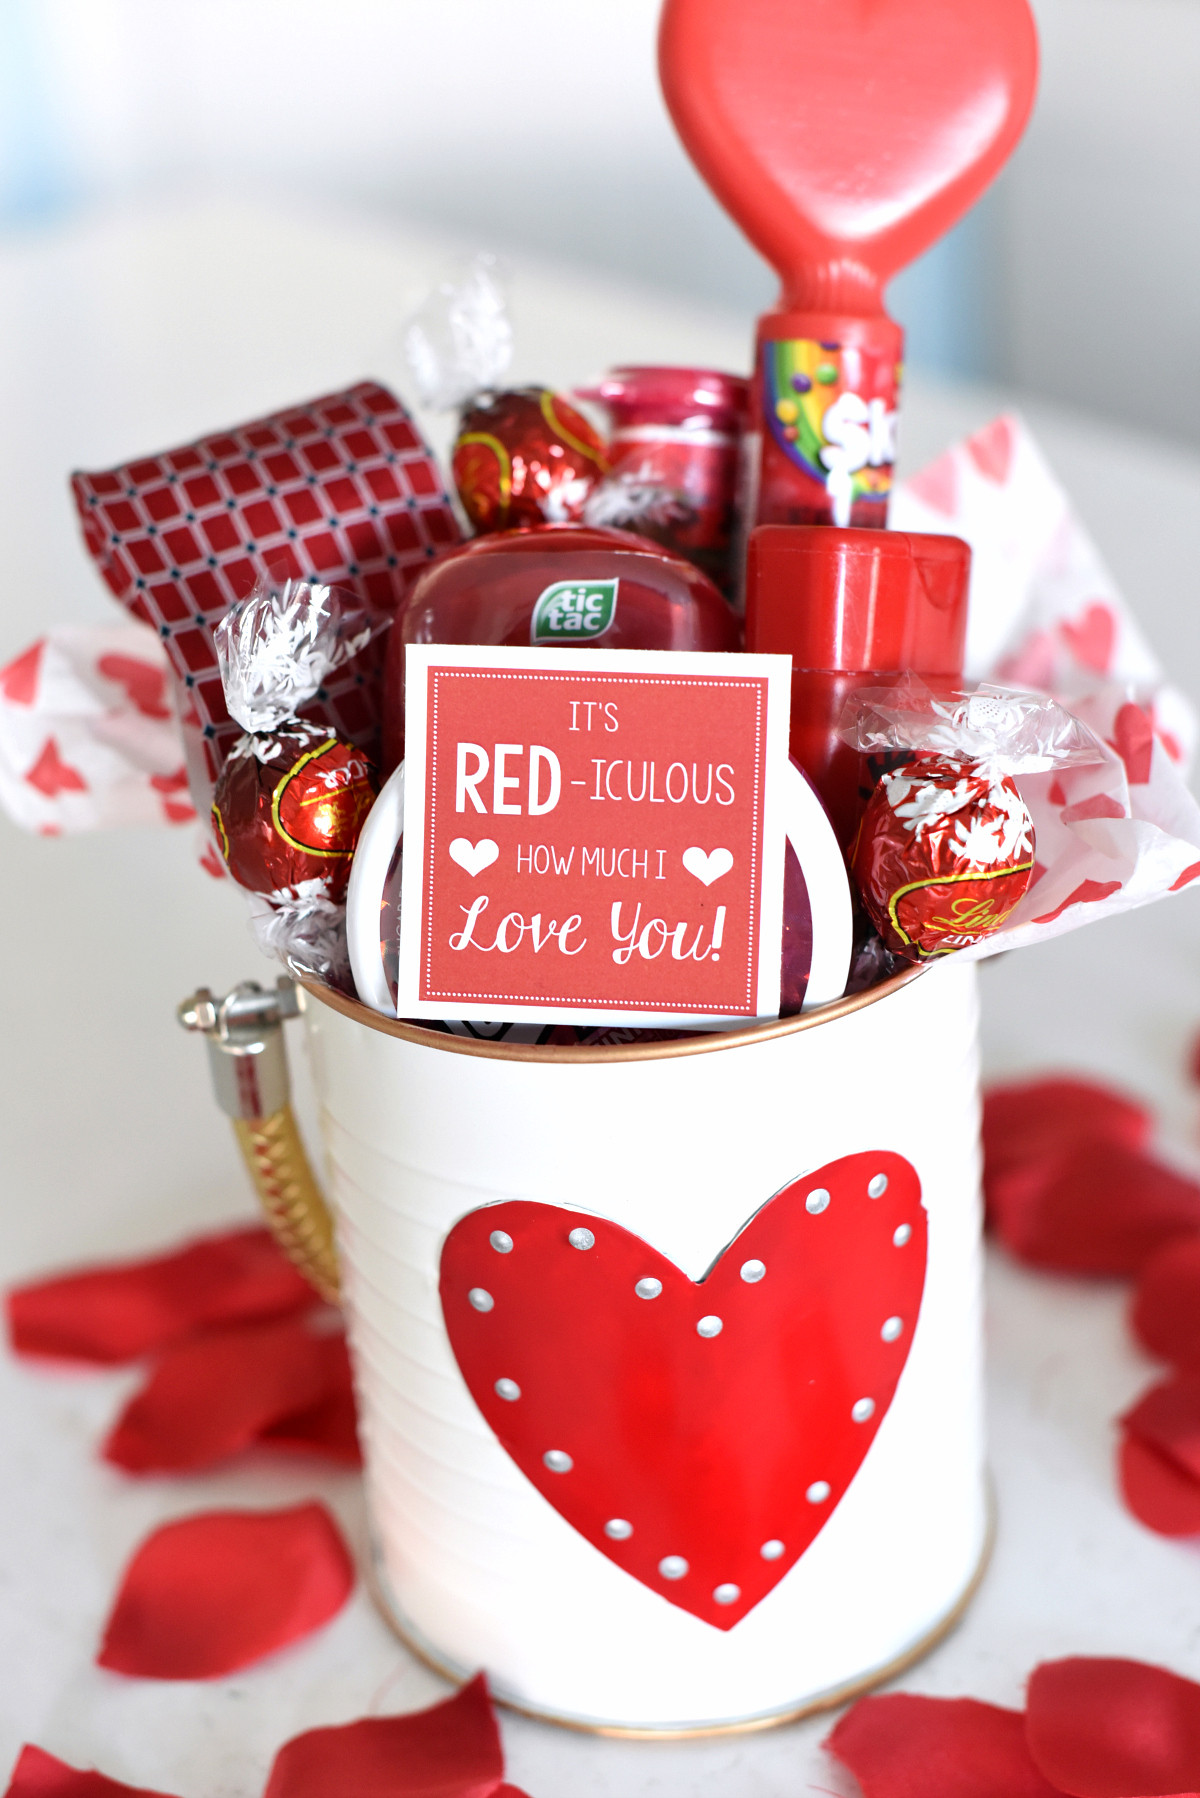 Cool Valentine Gift Ideas
 25 DIY Valentine s Day Gift Ideas Teens Will Love